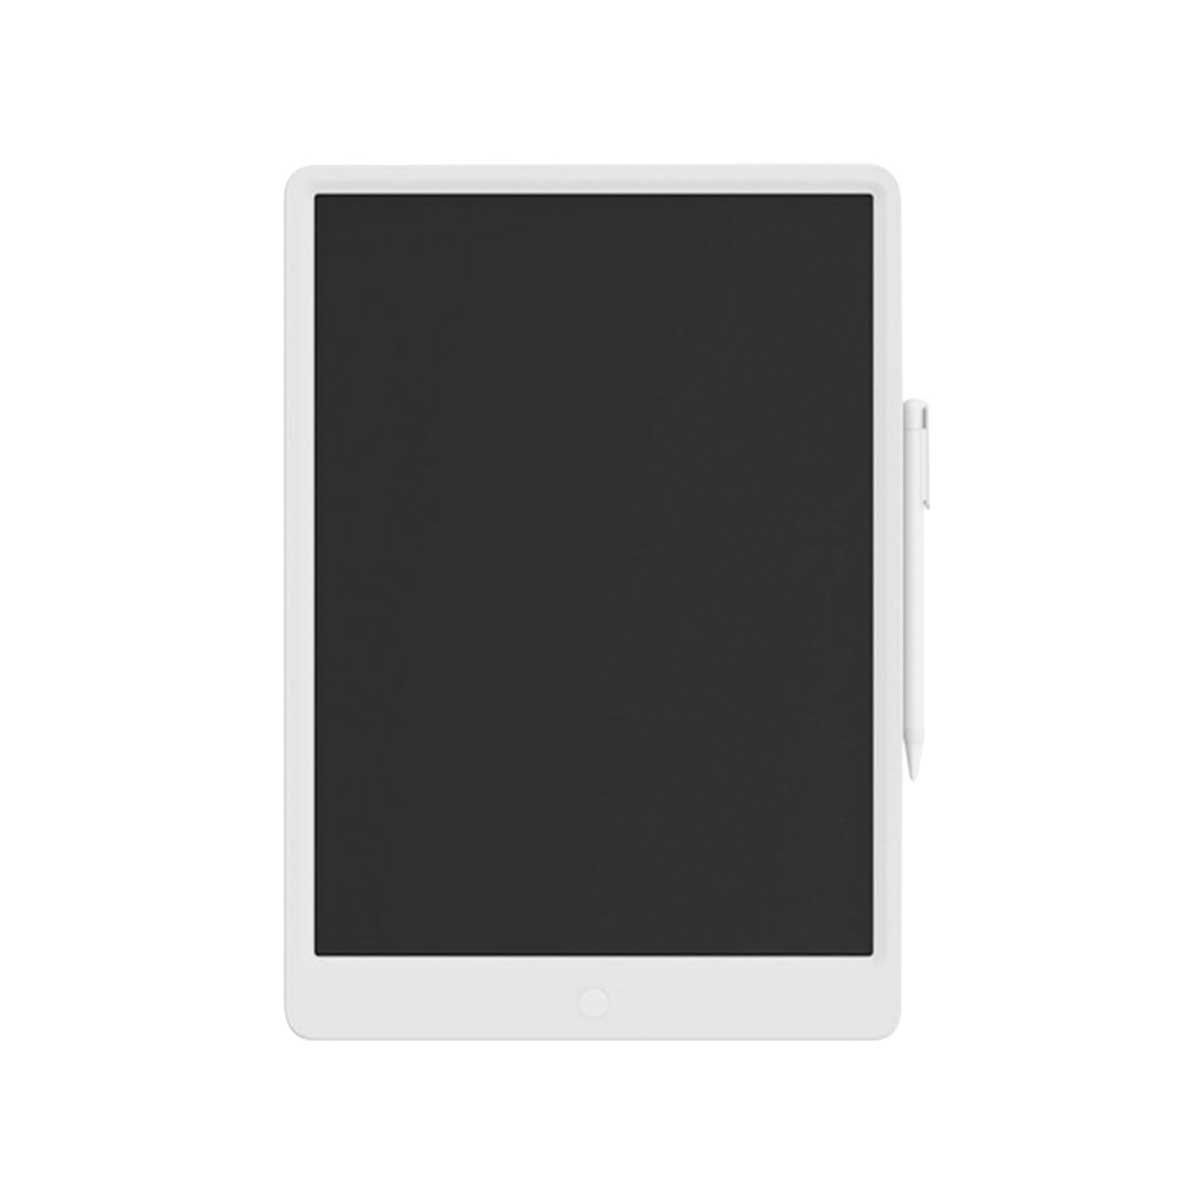 Xiaomi mijia LCD writing tablet with pen digital drawing 13.5inch กระดานวาดเขียน ลบได้ ขนาด 13.5 นิ้ว สีขาว หน้าจอ LCD ที่มีความชัดเจนมาก ไวต่อแรงกด